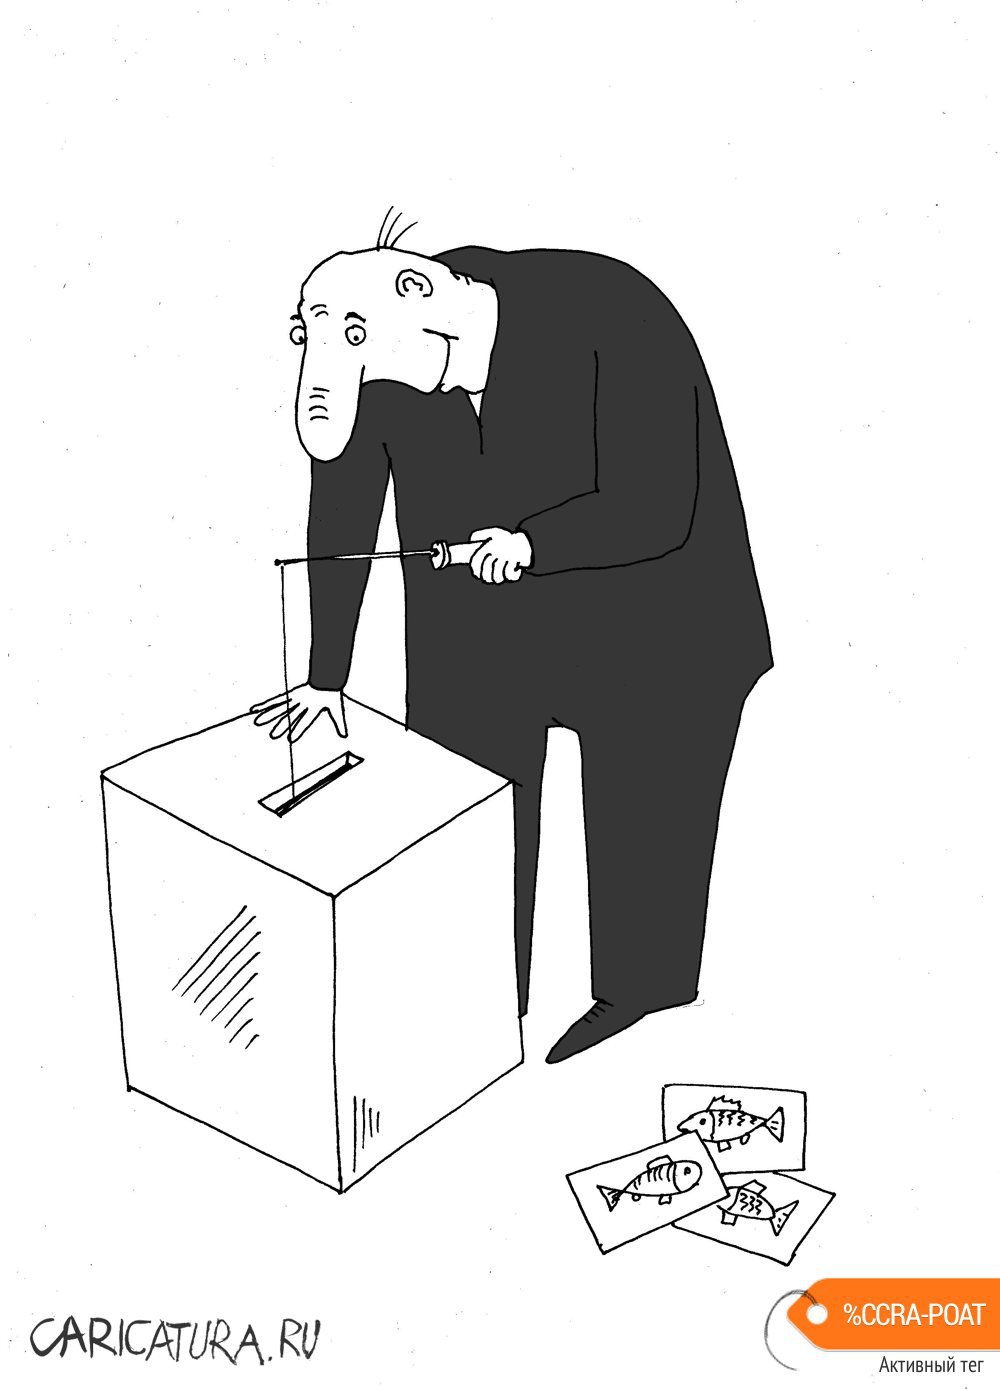 Карикатура "Привычка", Валерий Тарасенко